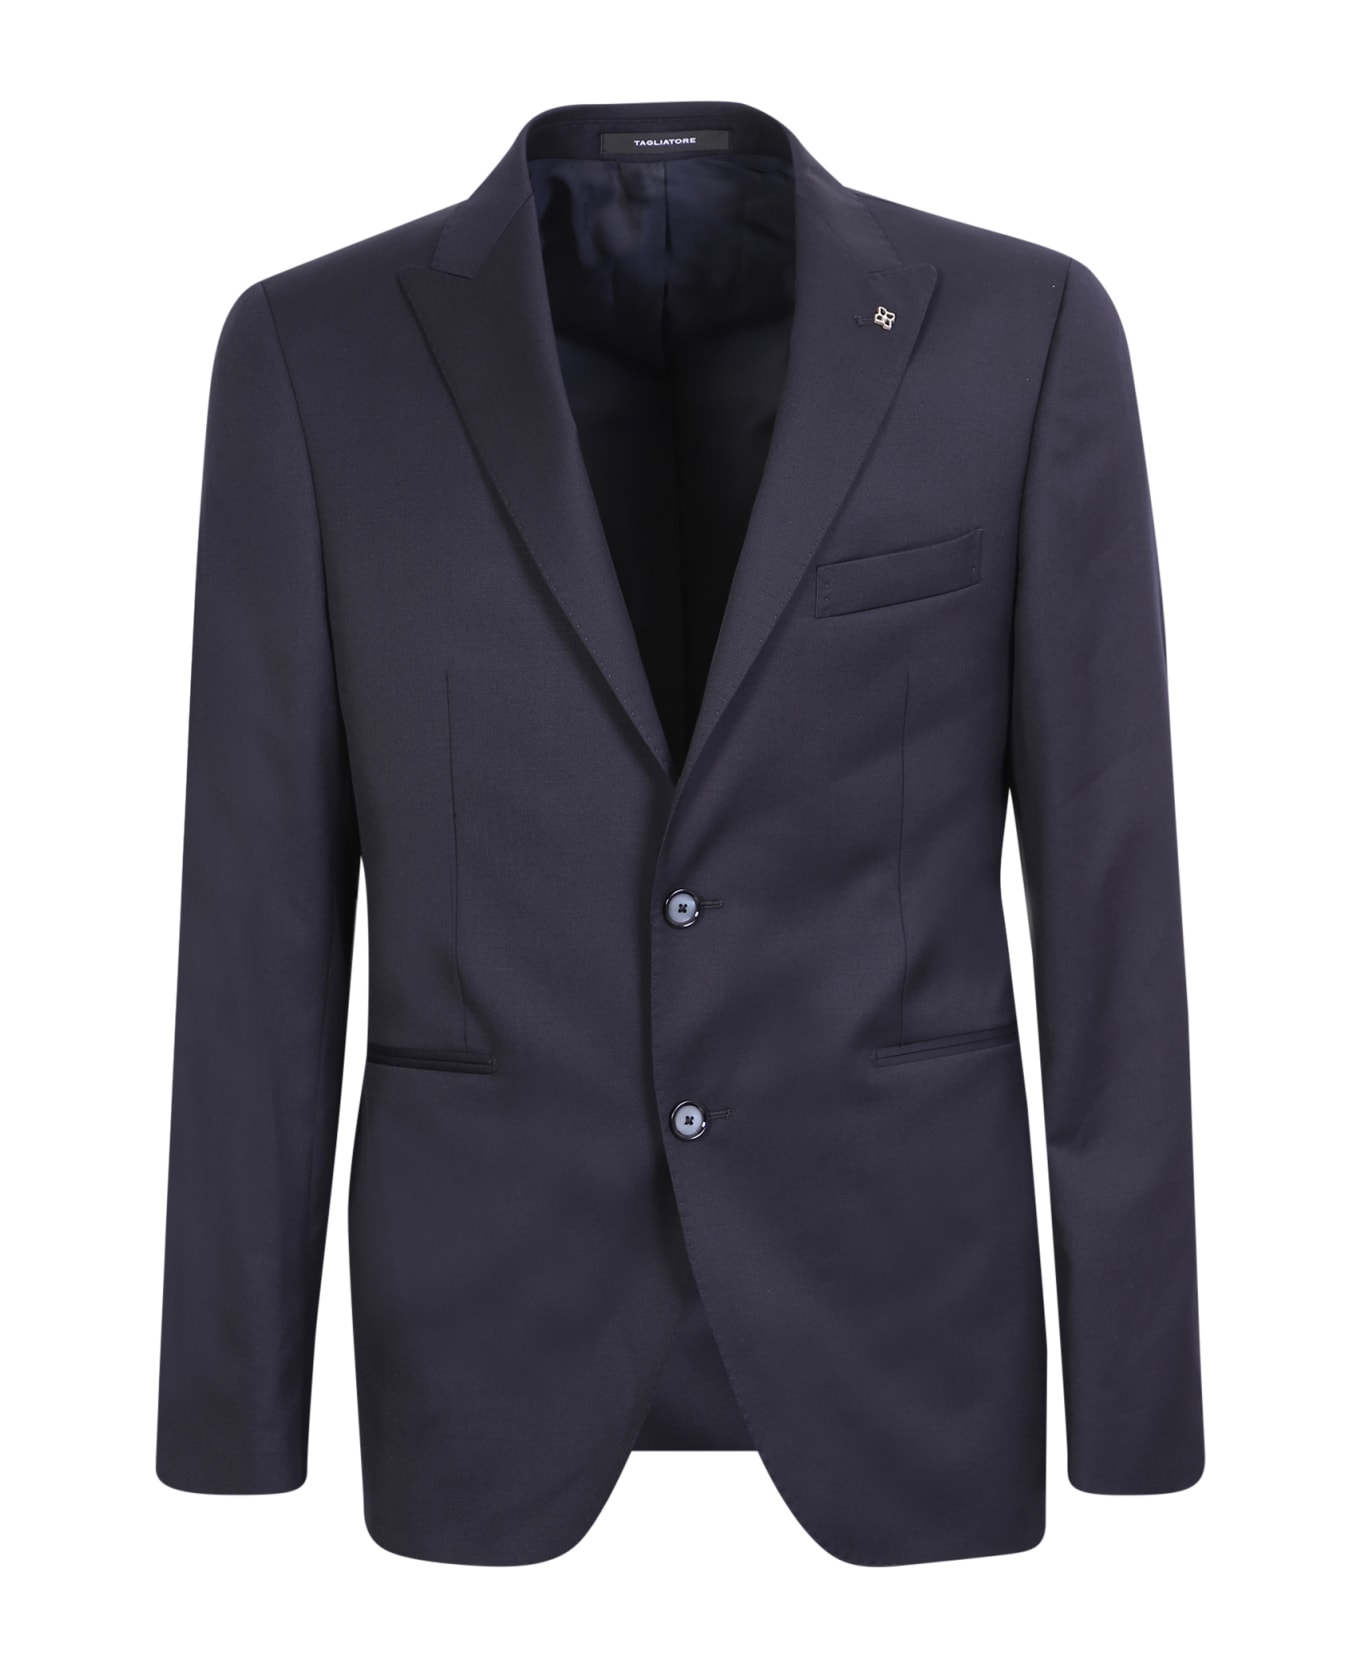 Tagliatore Suit With Vest Sallia' Blue - Blue